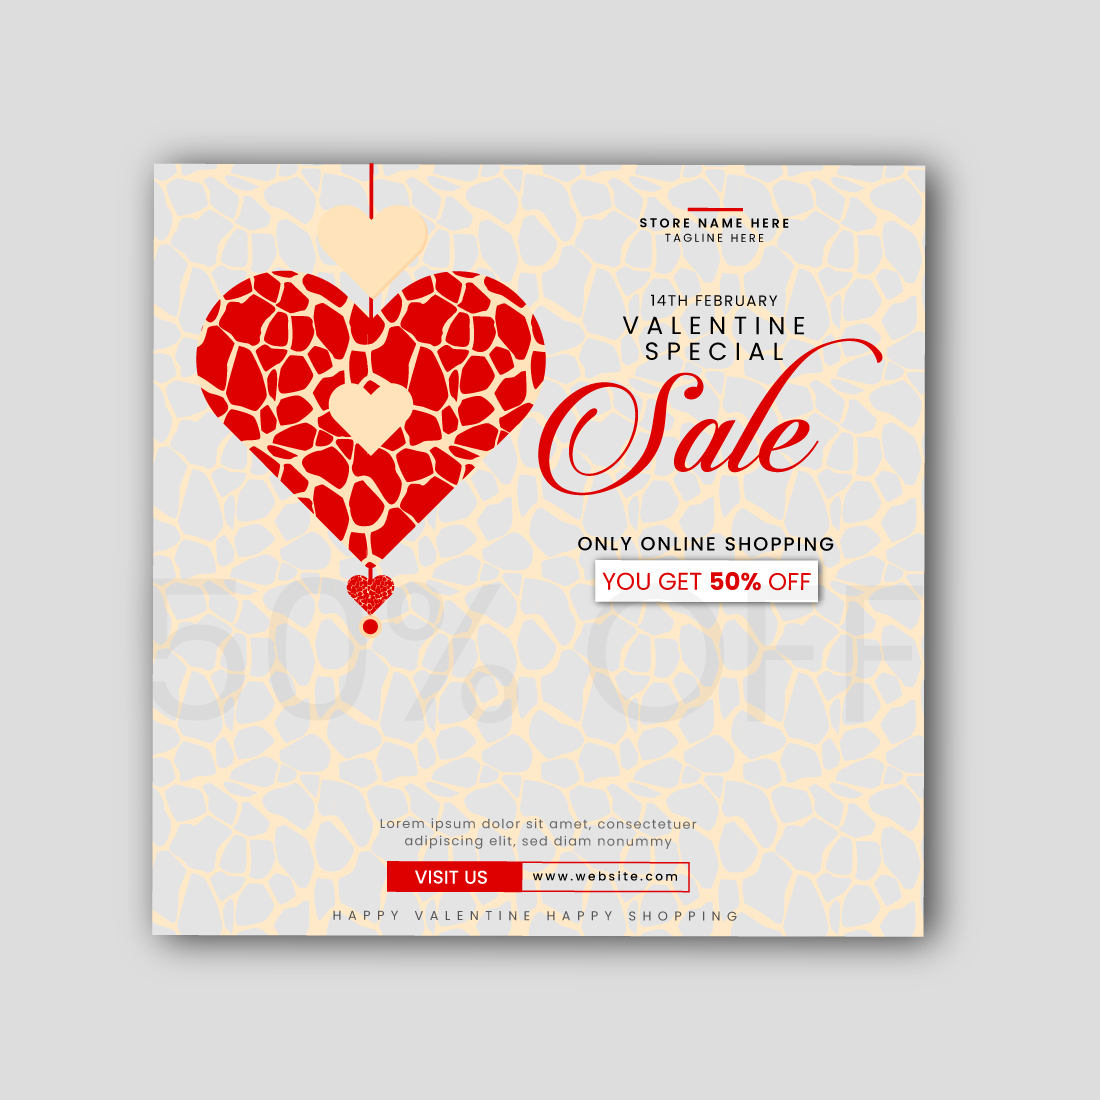 Valentine Sale Social media post cover image.